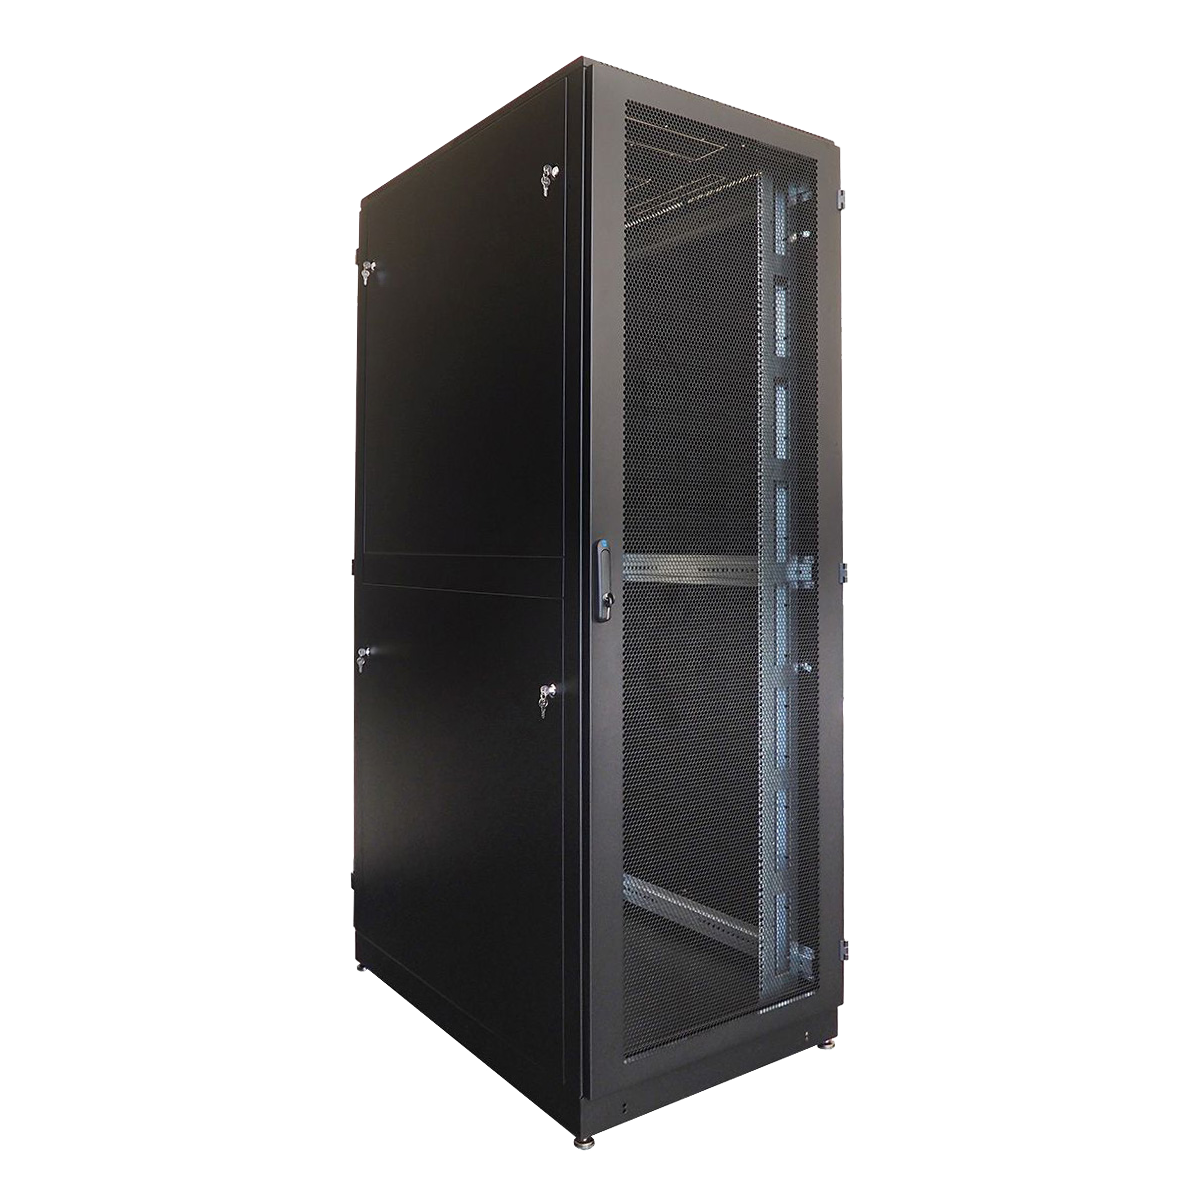 Шкаф серверный напольный 42U (800 × 1200) двойные перфорированные двери 2 шт.